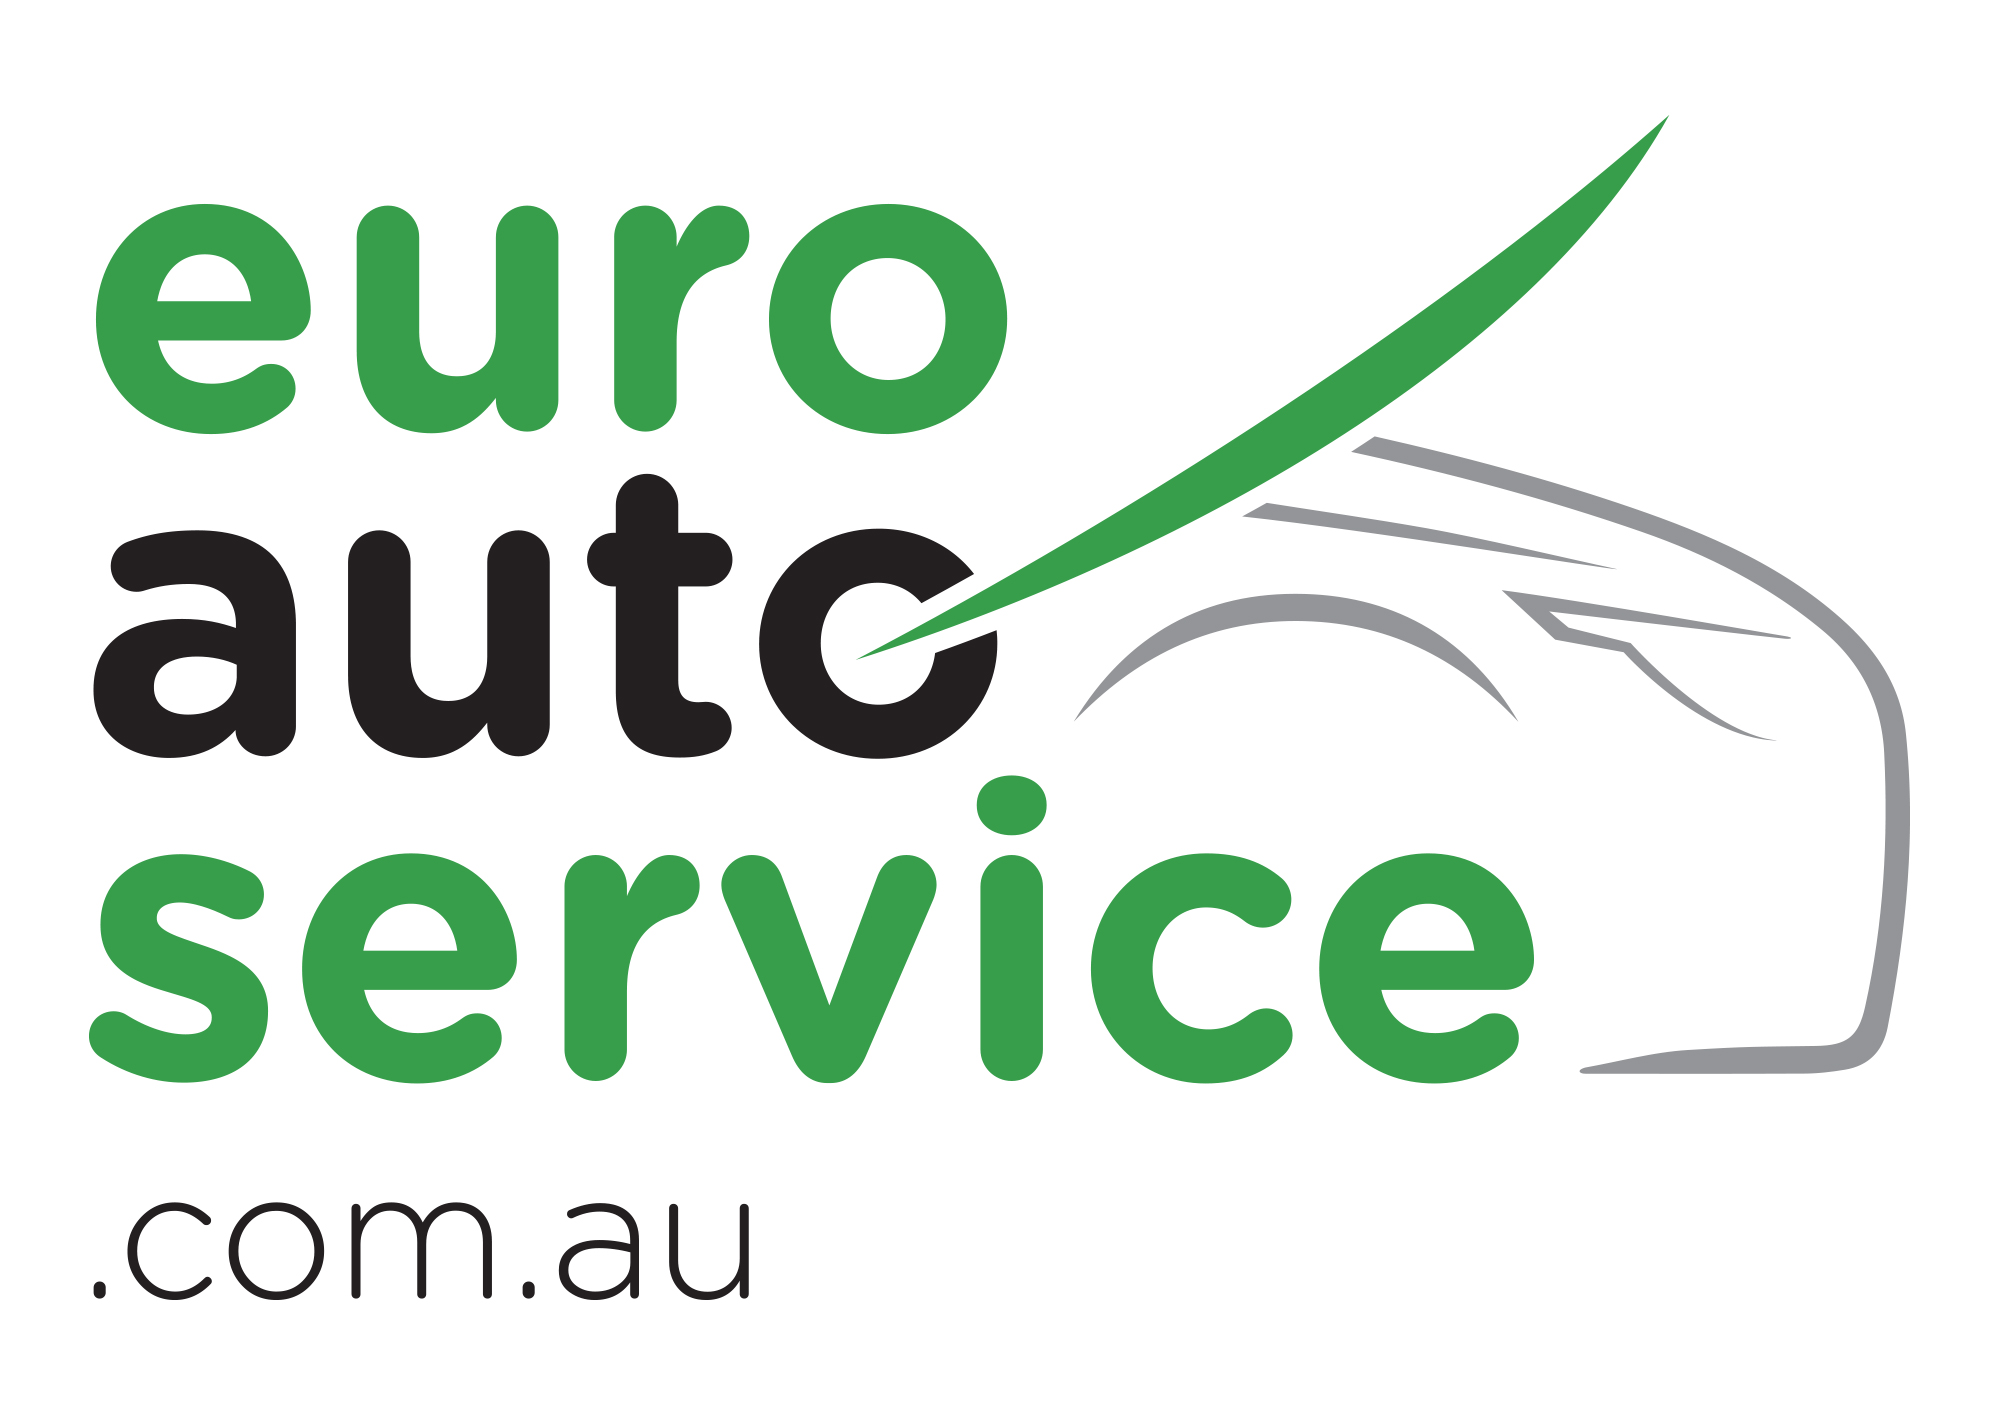 euroautoservice.com.au